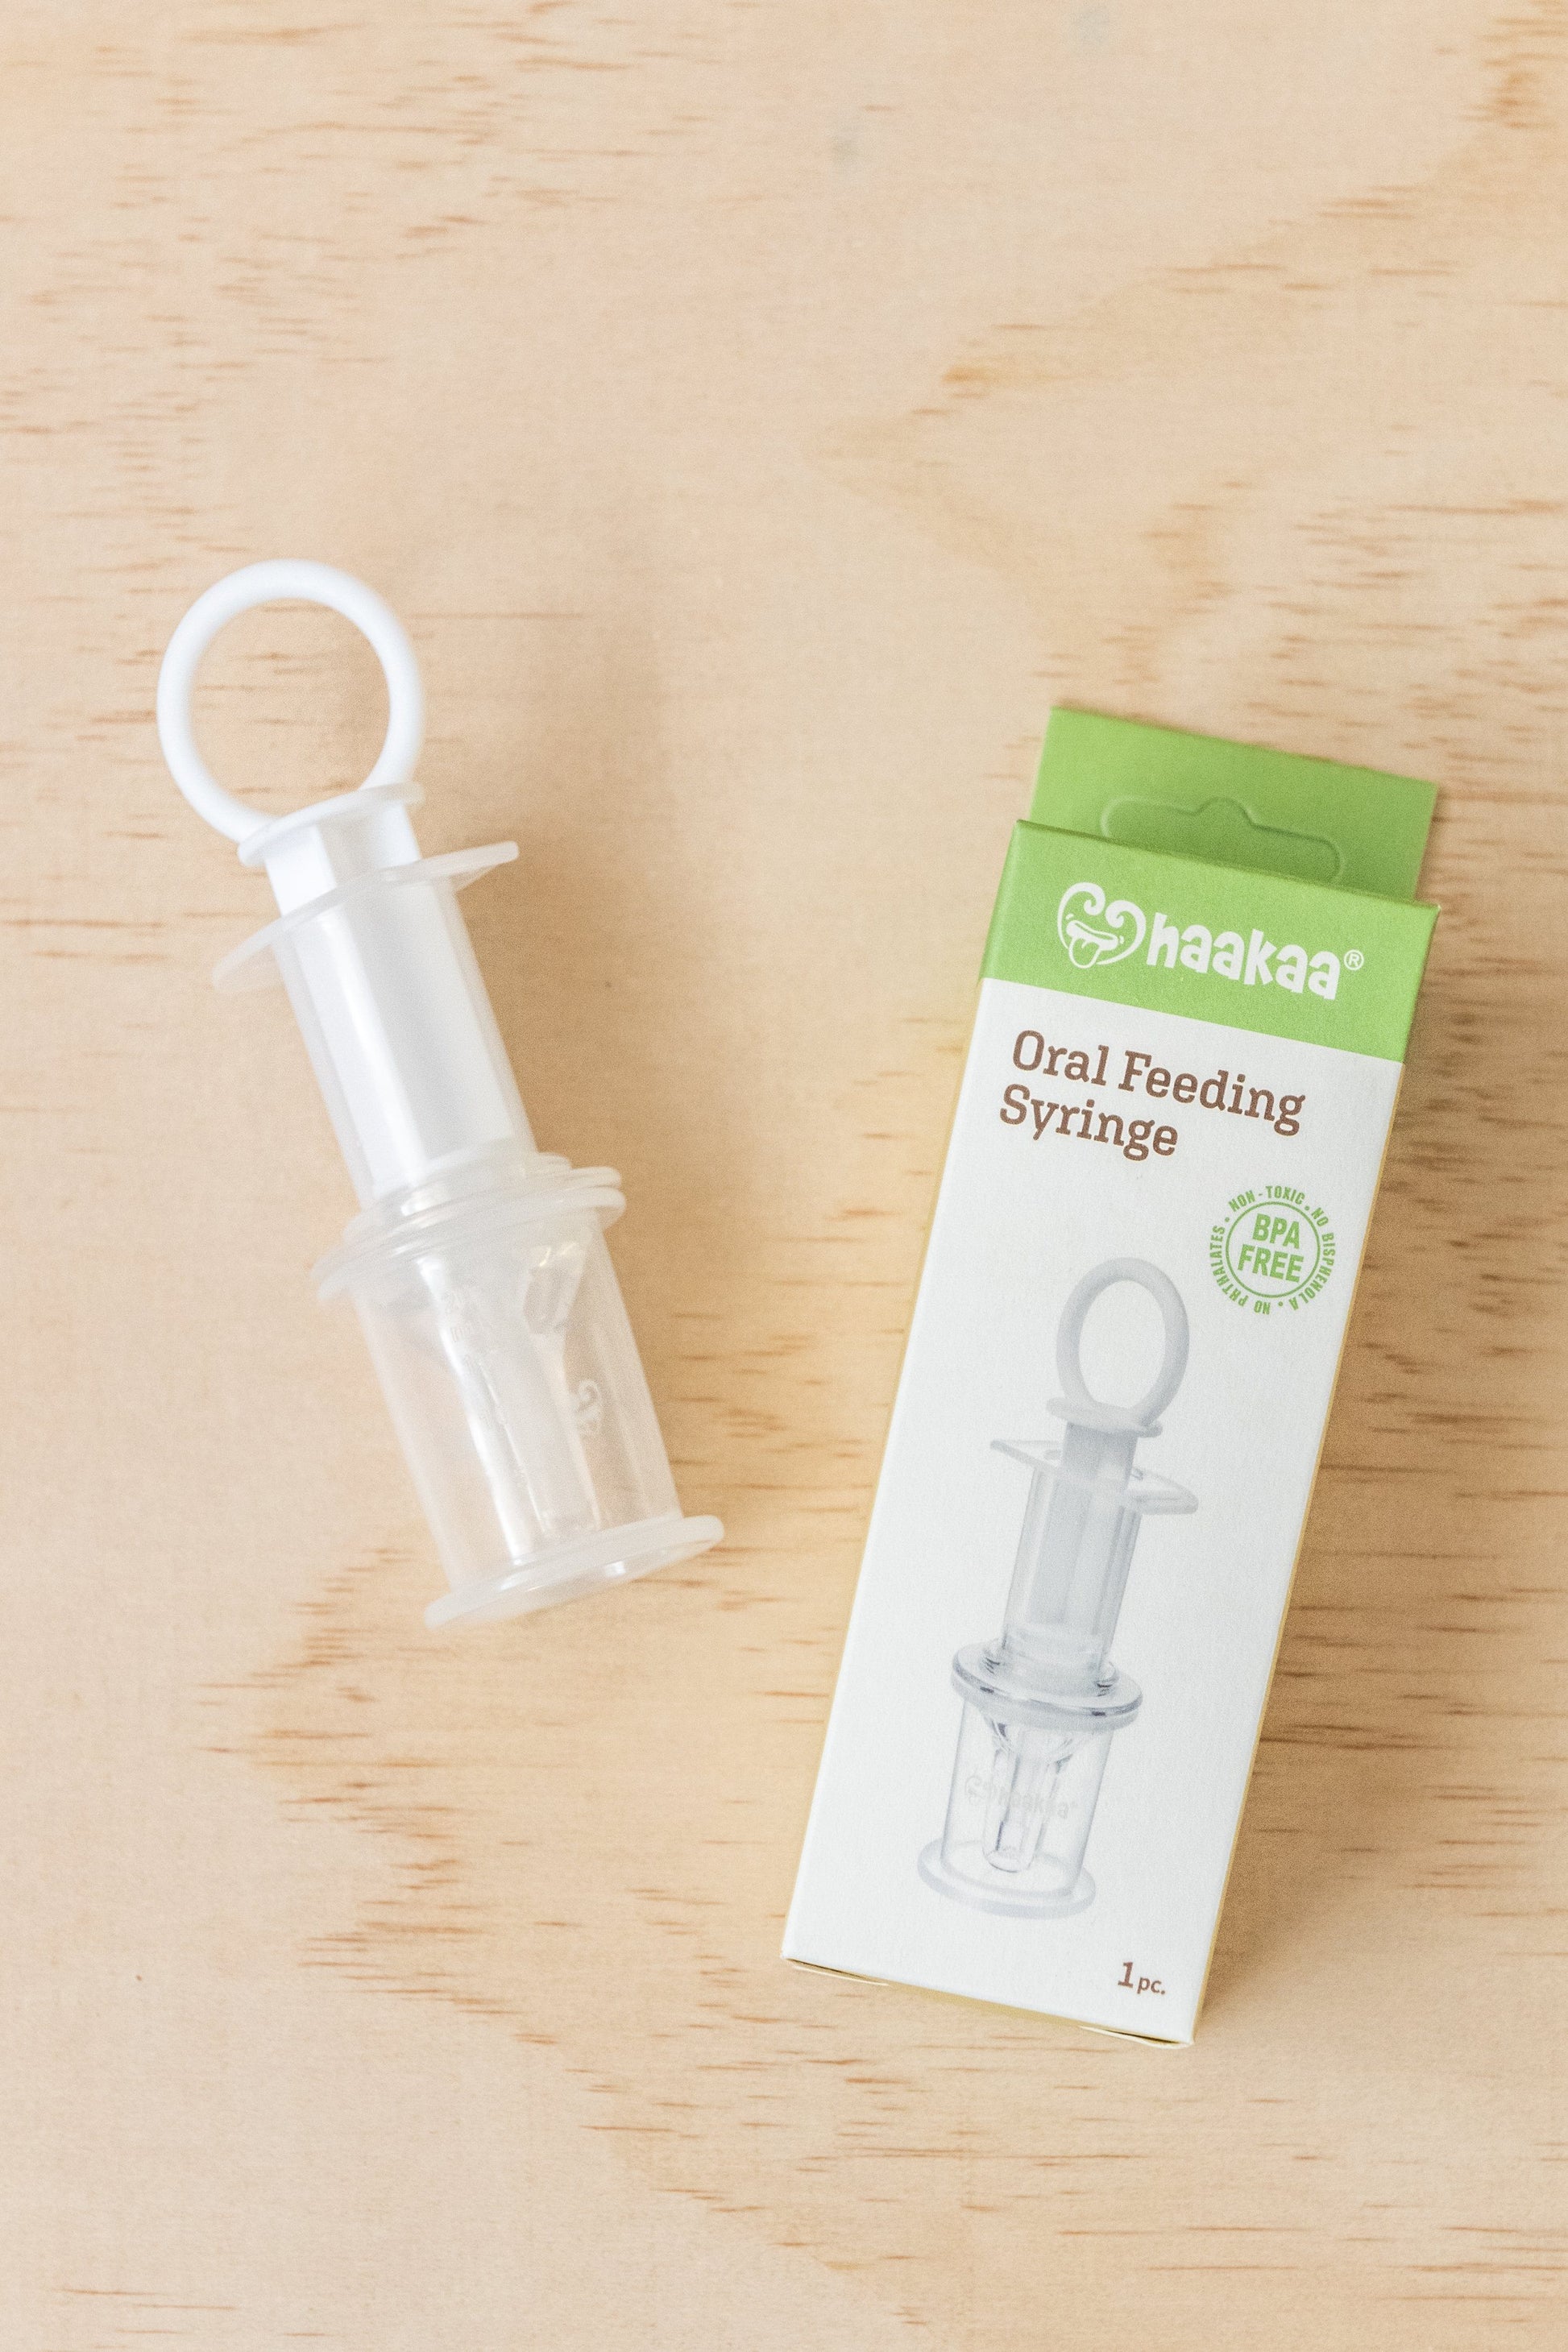 Oral Feeding Syringe – Kiin ®